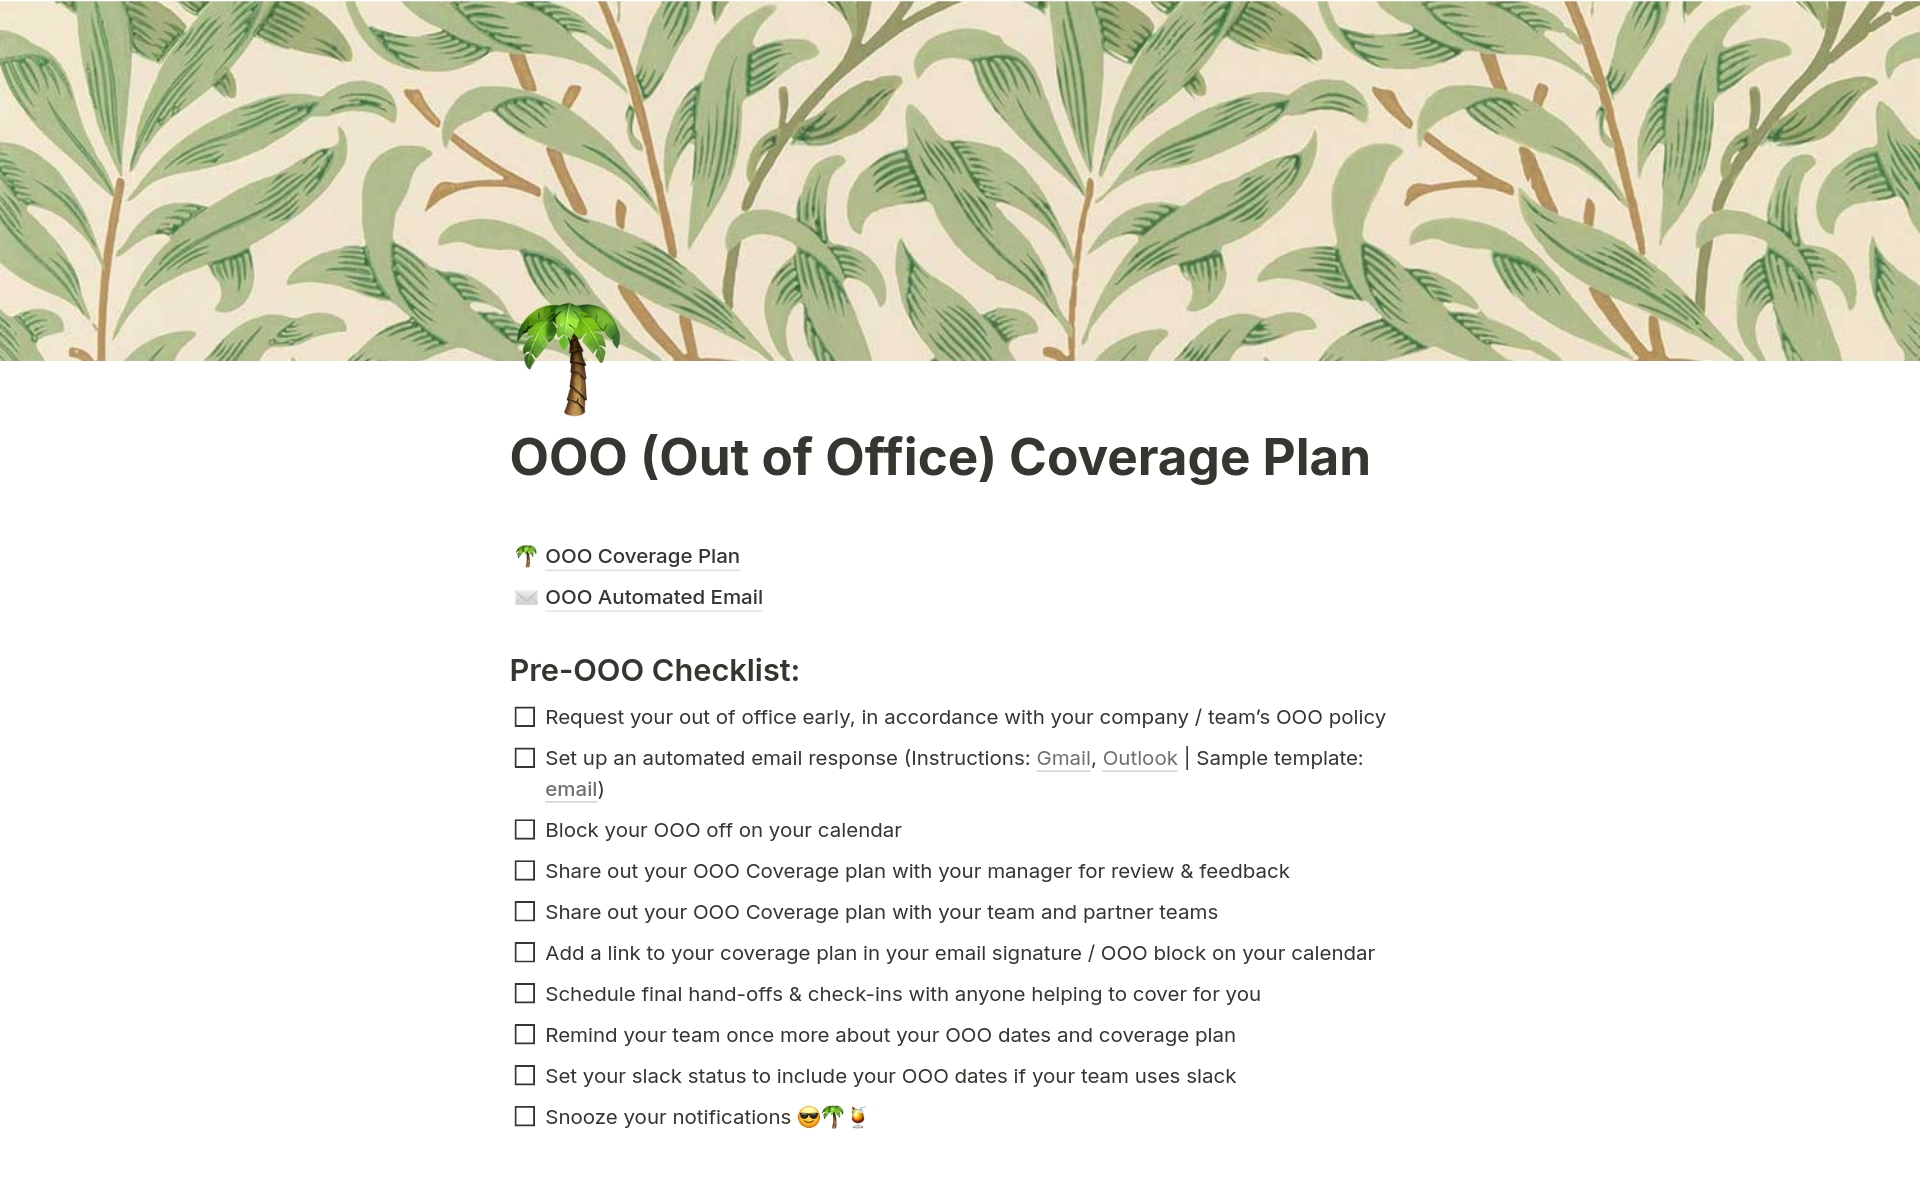 Uma prévia do modelo para OOO (Out of Office) Coverage Plan